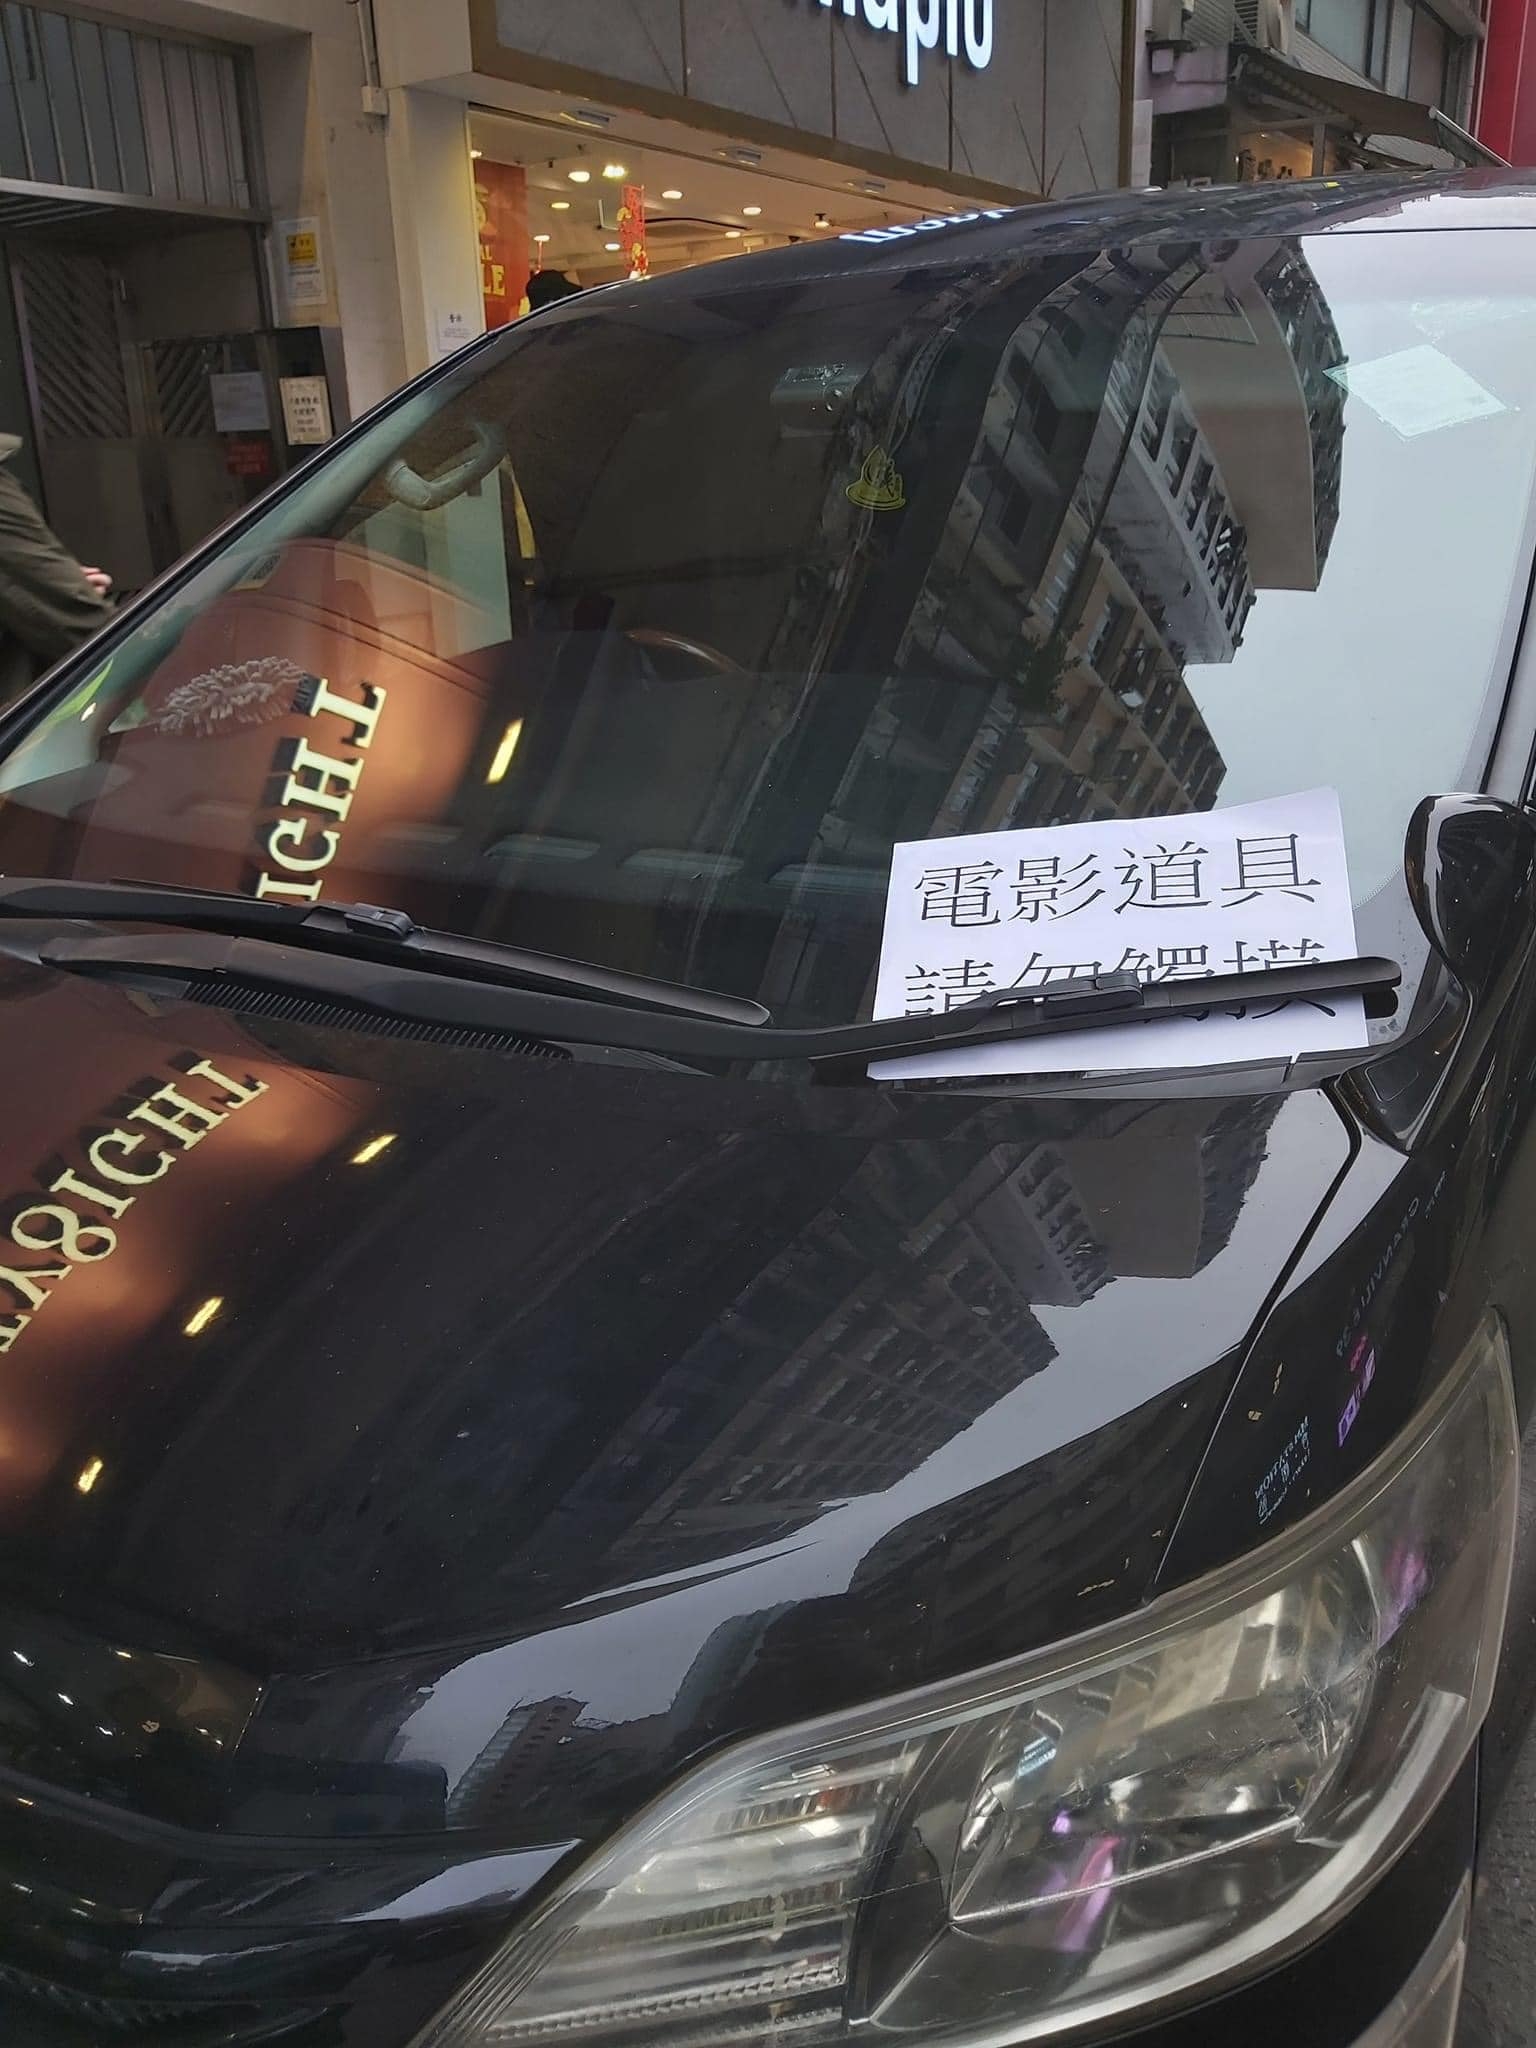 私家車張貼一張「電影道具，請勿觸摸」的字條引人犯罪